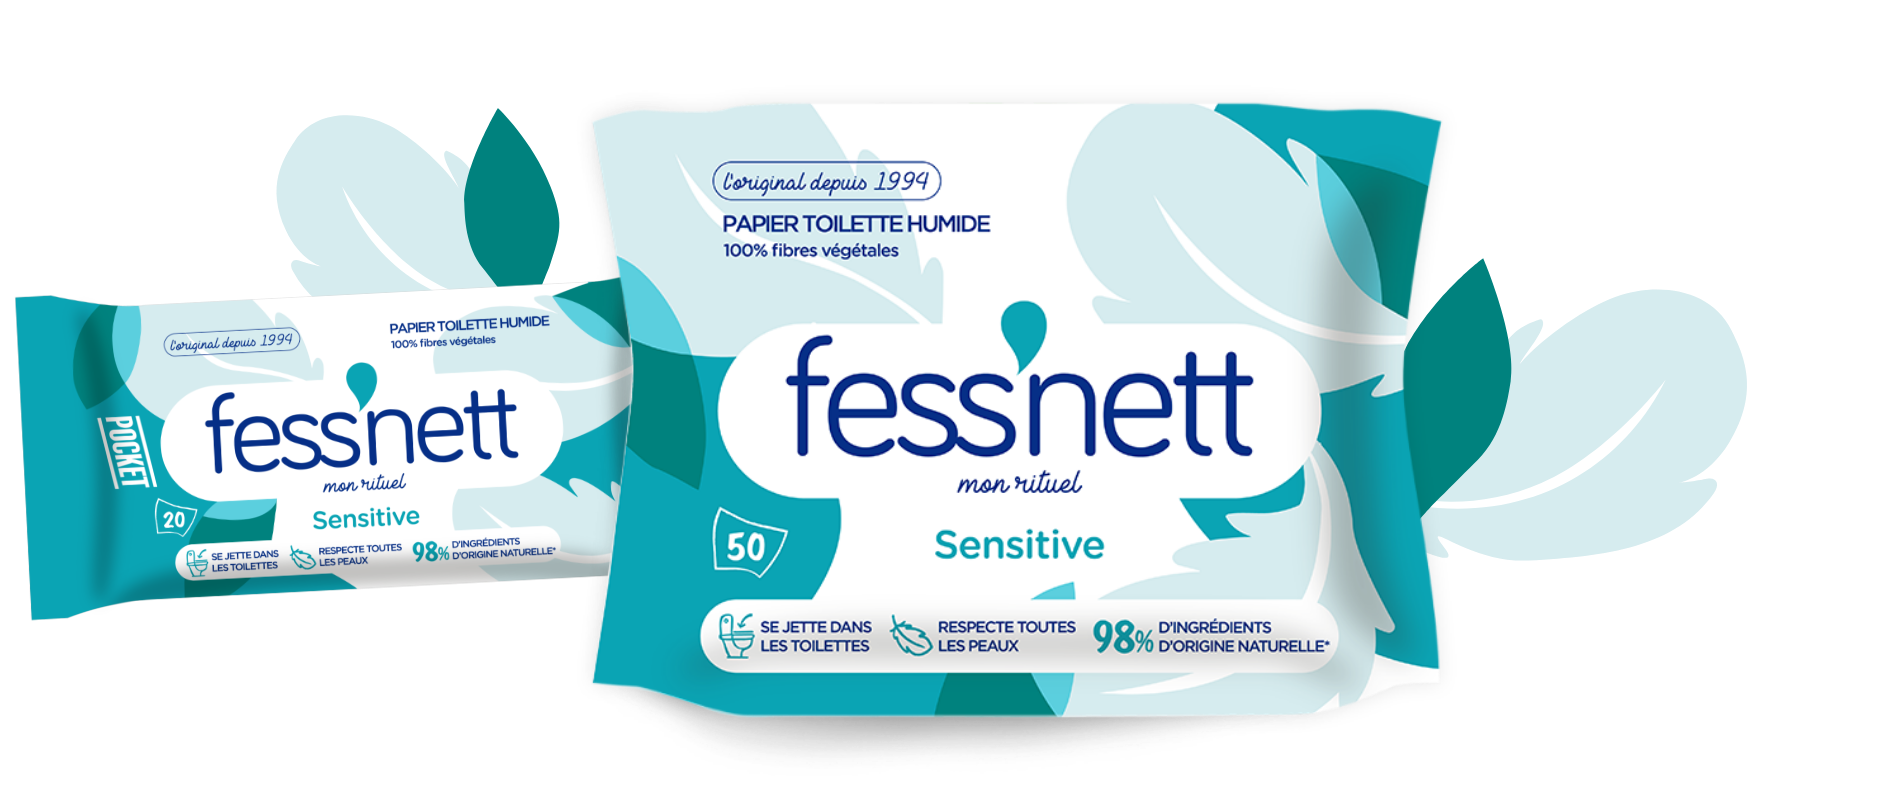 Fess'nett - Papier Toilette Humide Natura x50 - Formule Testée  Dermatologiquement 0% Parabène 0% Phenoxyethanol - Hypoallergénique